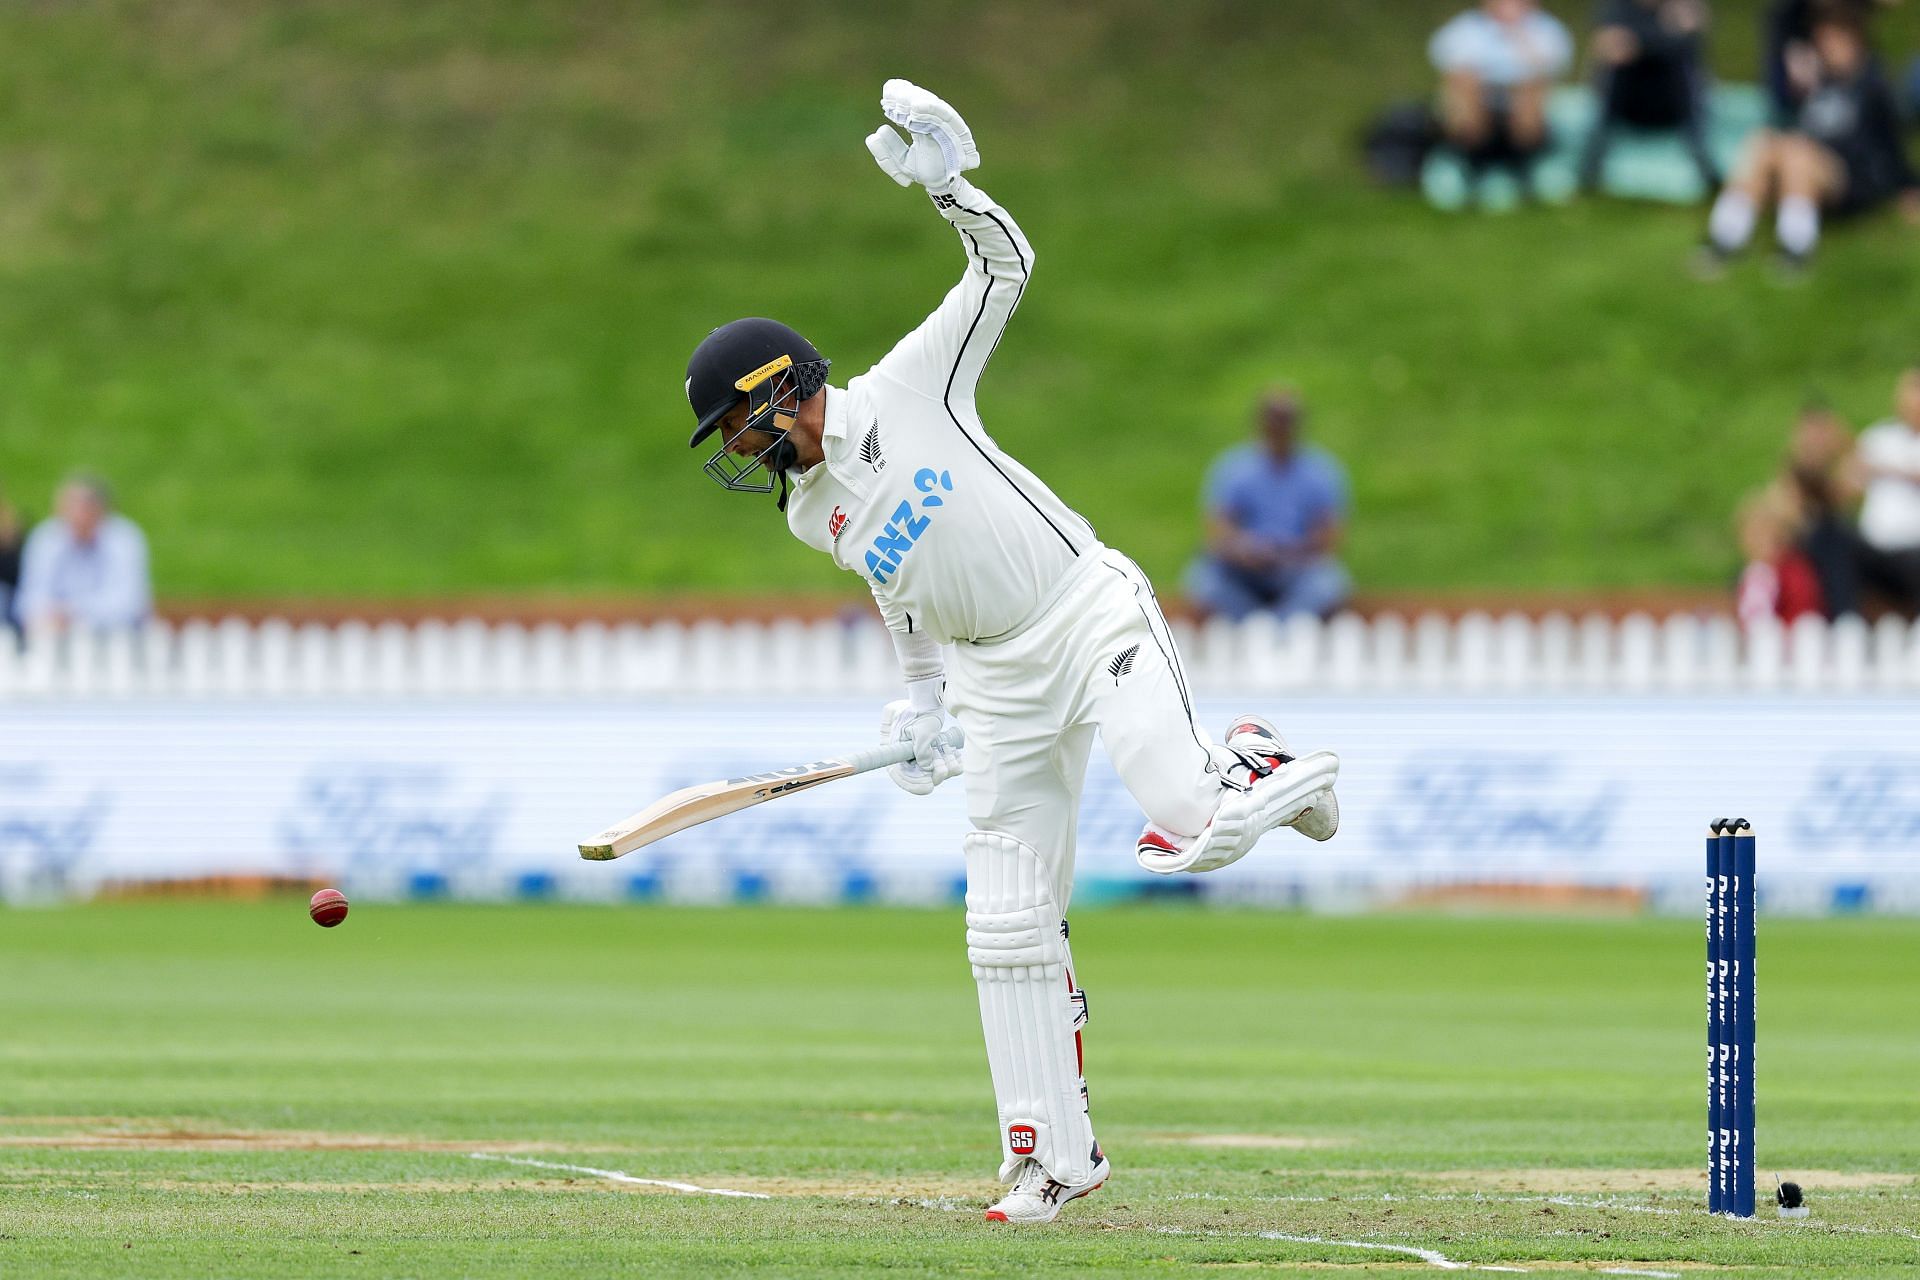 New Zealand v Sri Lanka - 2nd Test: Day 1